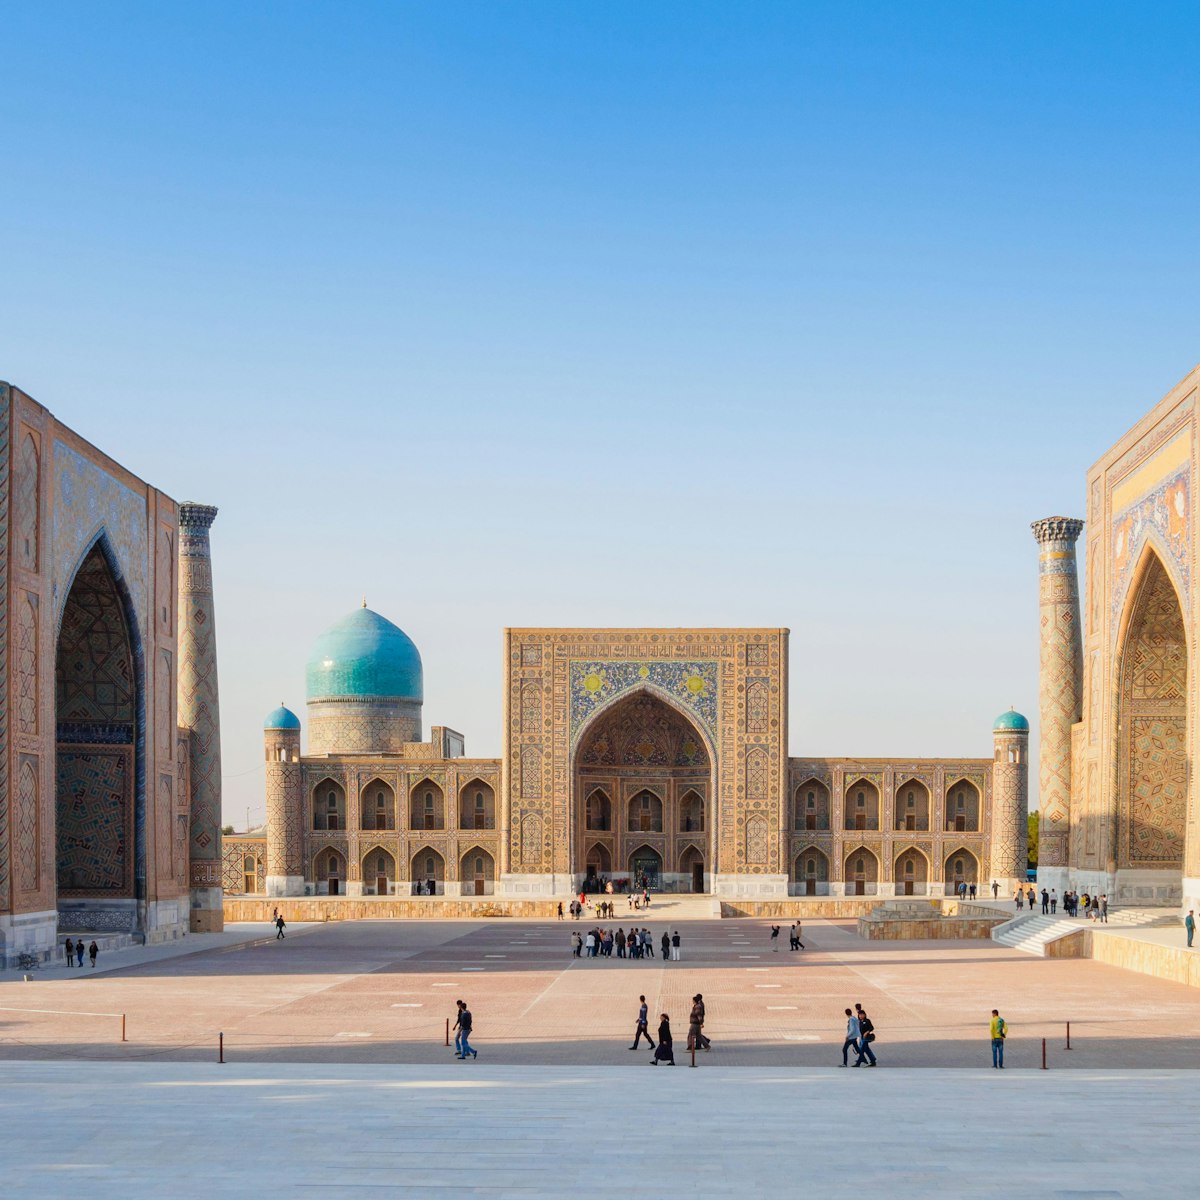 Registan square in Samarkand.
